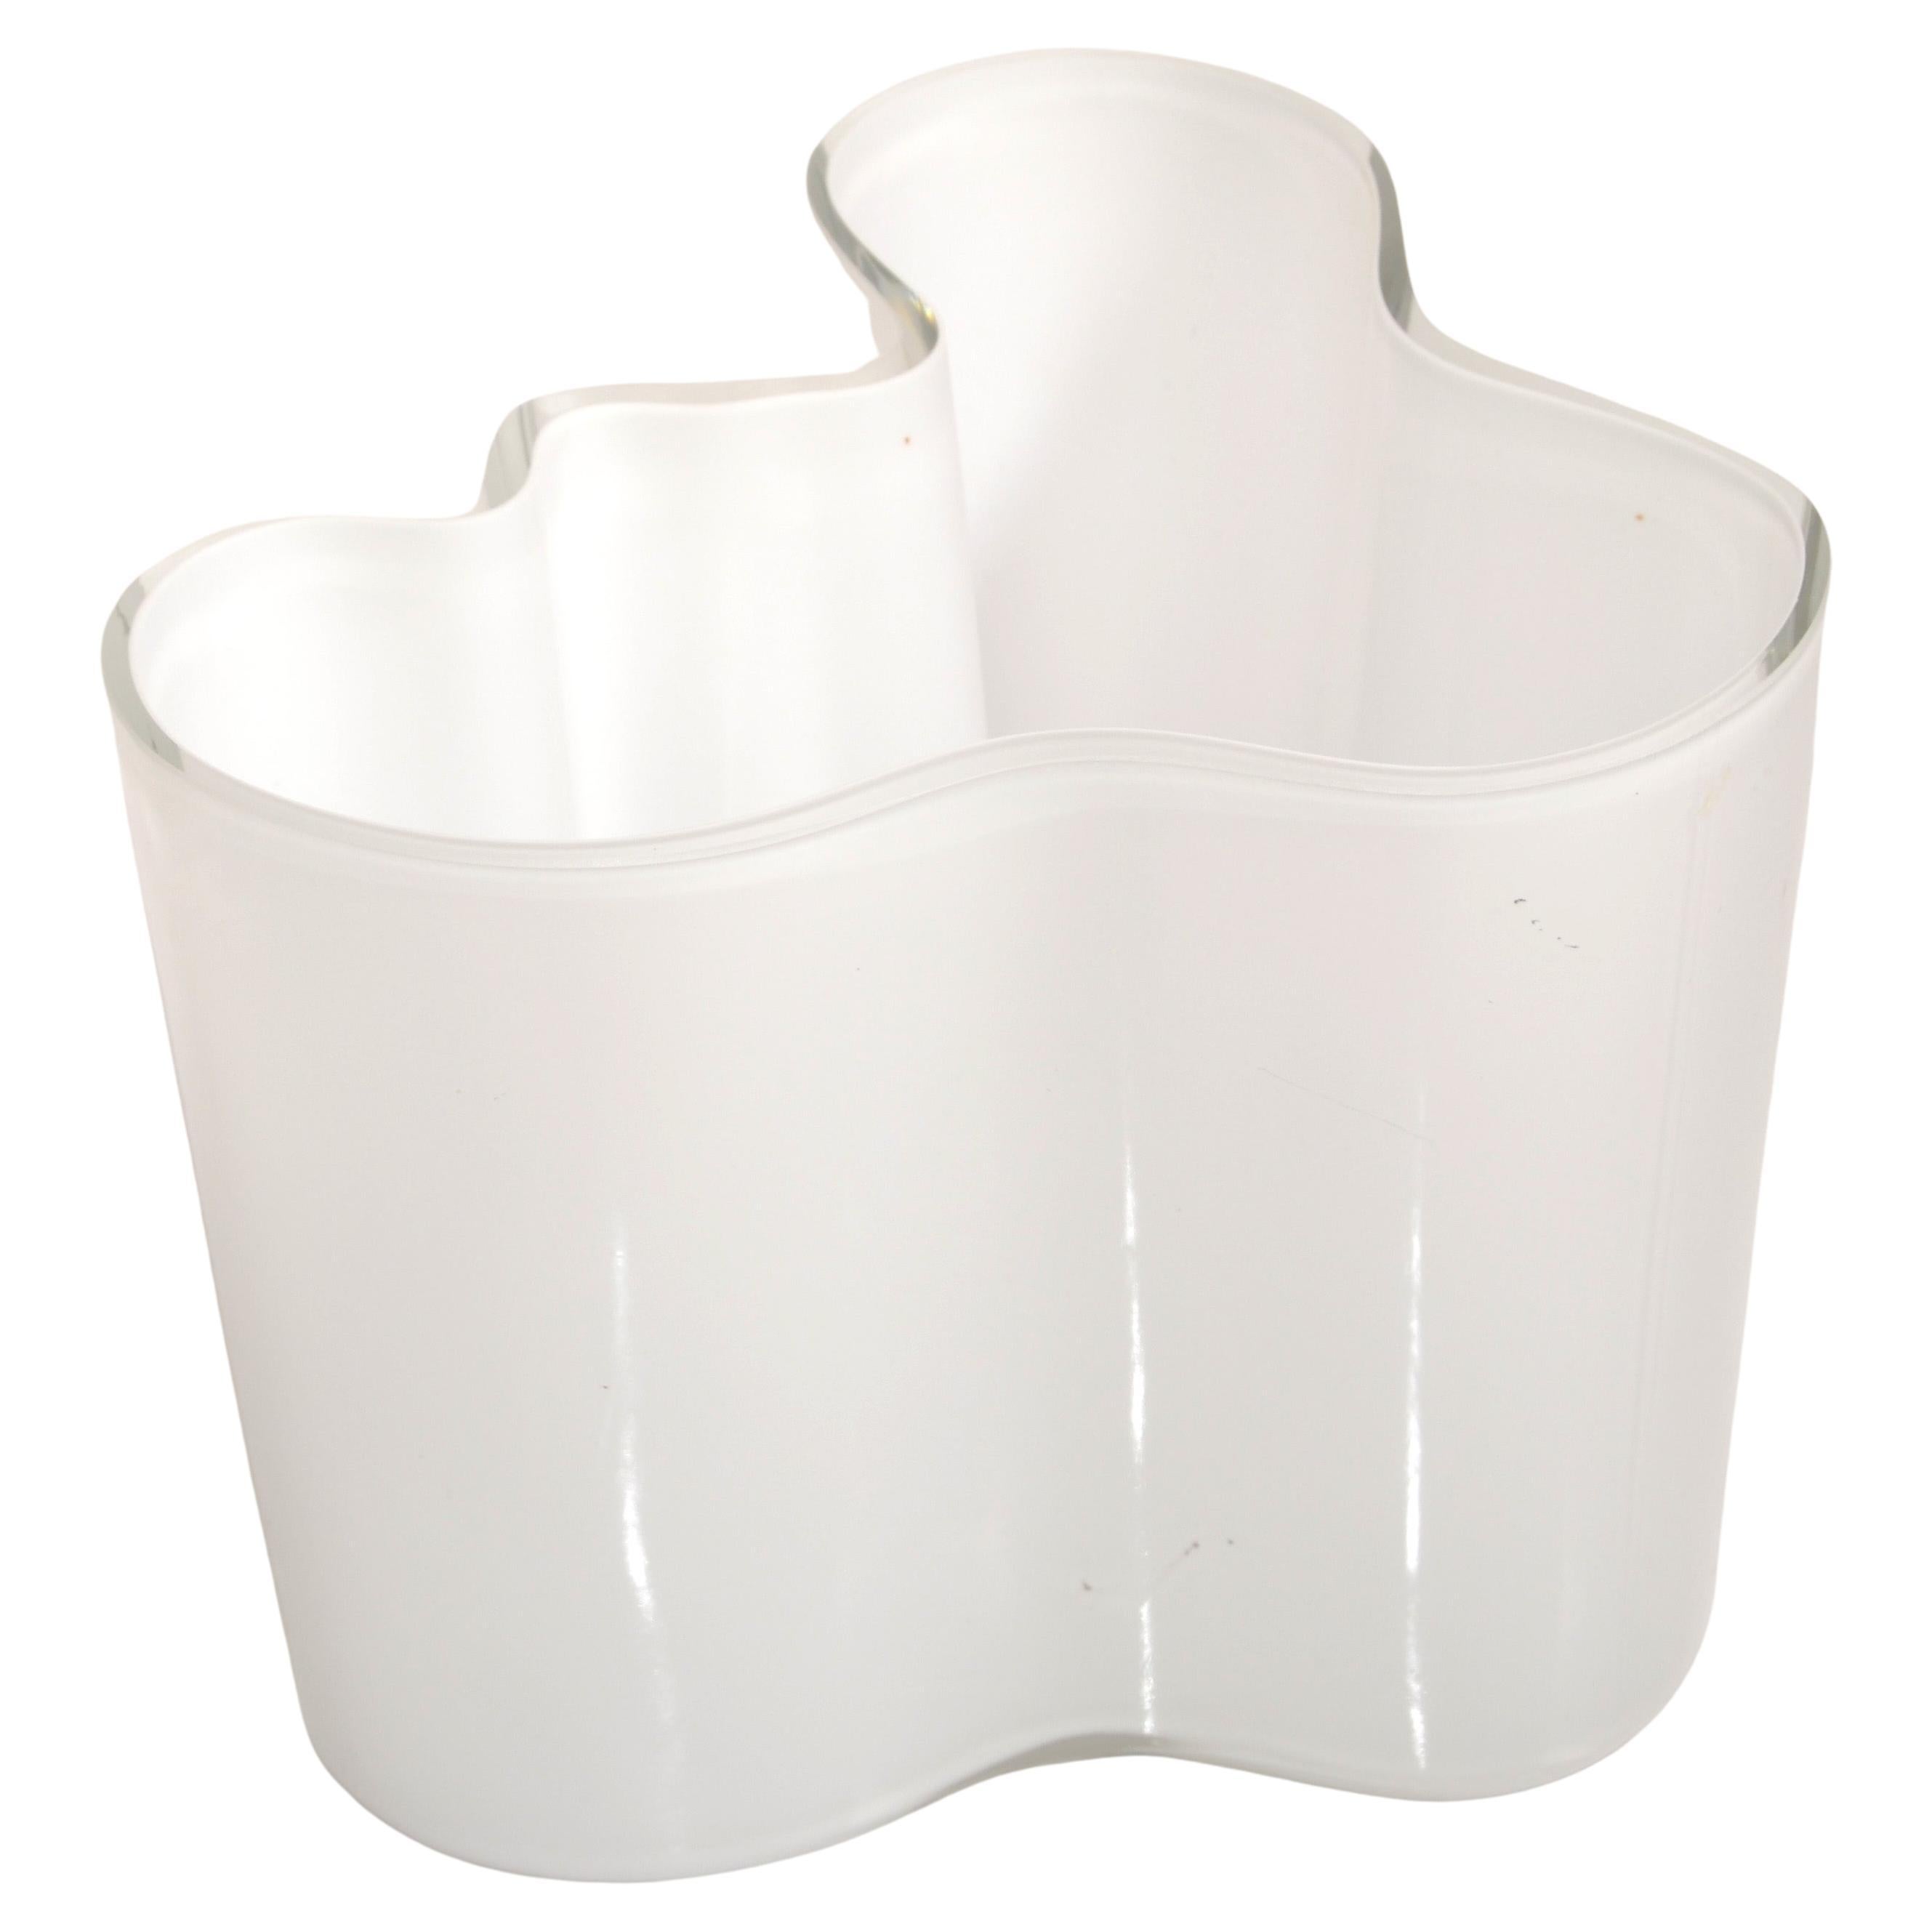 Iittala Alvar Aalto Model 3030 White Encased Glass Sculptural Flower Vase Bowl 